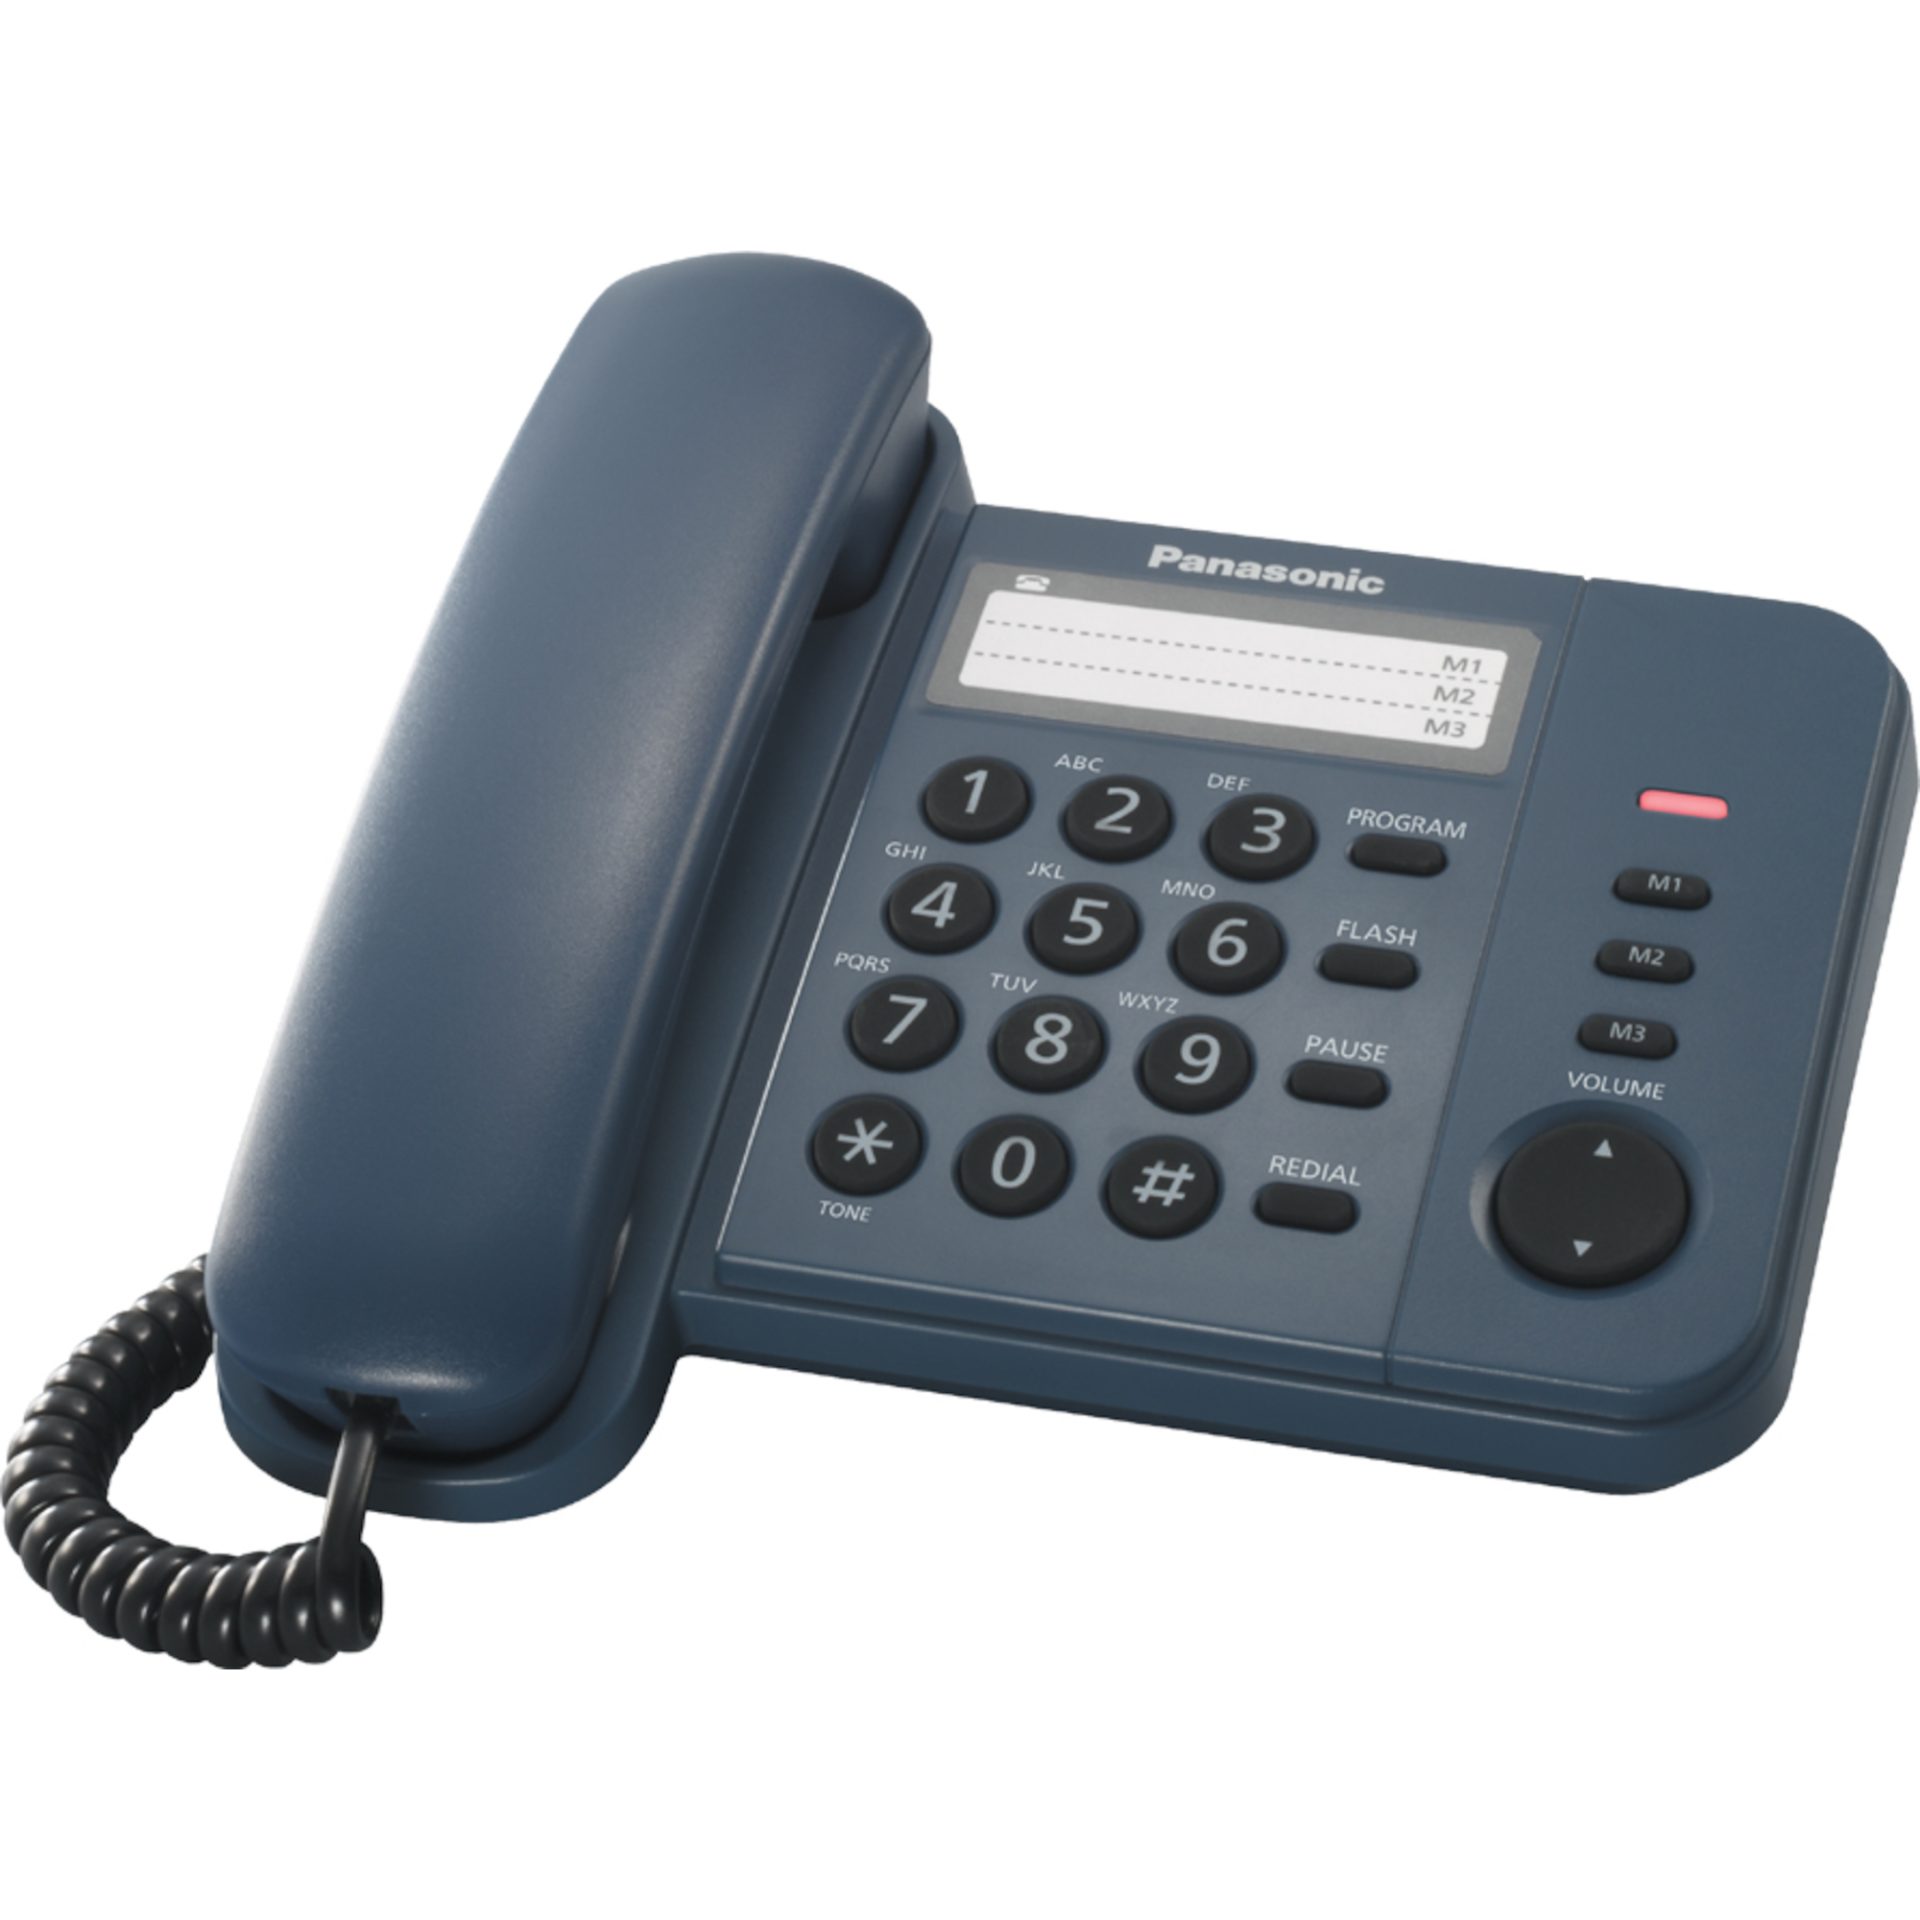 Panasonic KX-TS520 integrovaný telefonní systém (přímá volba jedním tlačítkem, seznam odchozích hovorů, indikátor vyzváněcího tónu), tmavě modrá